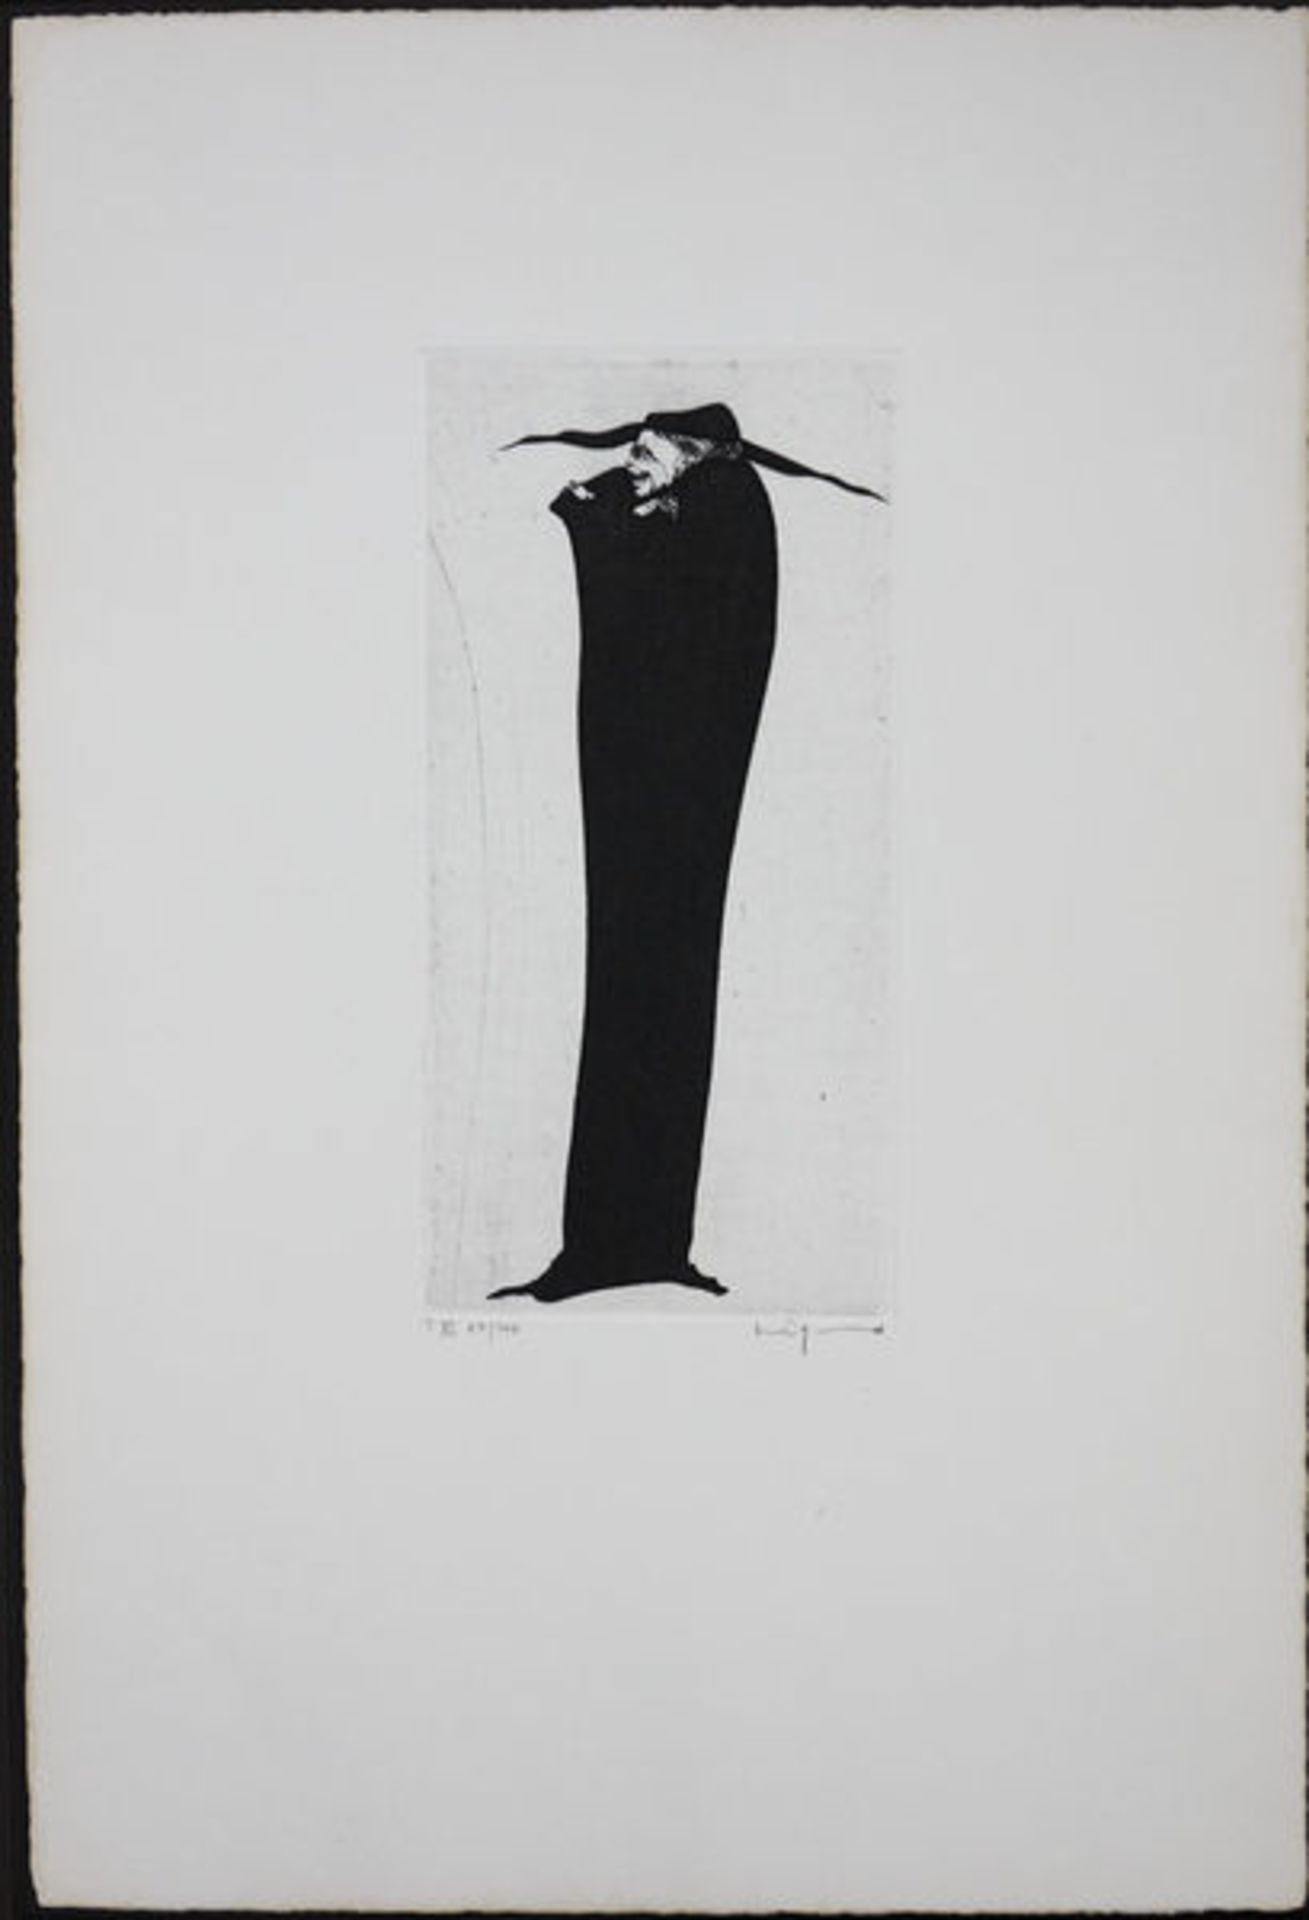 Degenhardt, Gertrude Radierung auf Bütten, 19,9 x 9,8 cm Ohne Titel Signiert und nummeriert "I VI